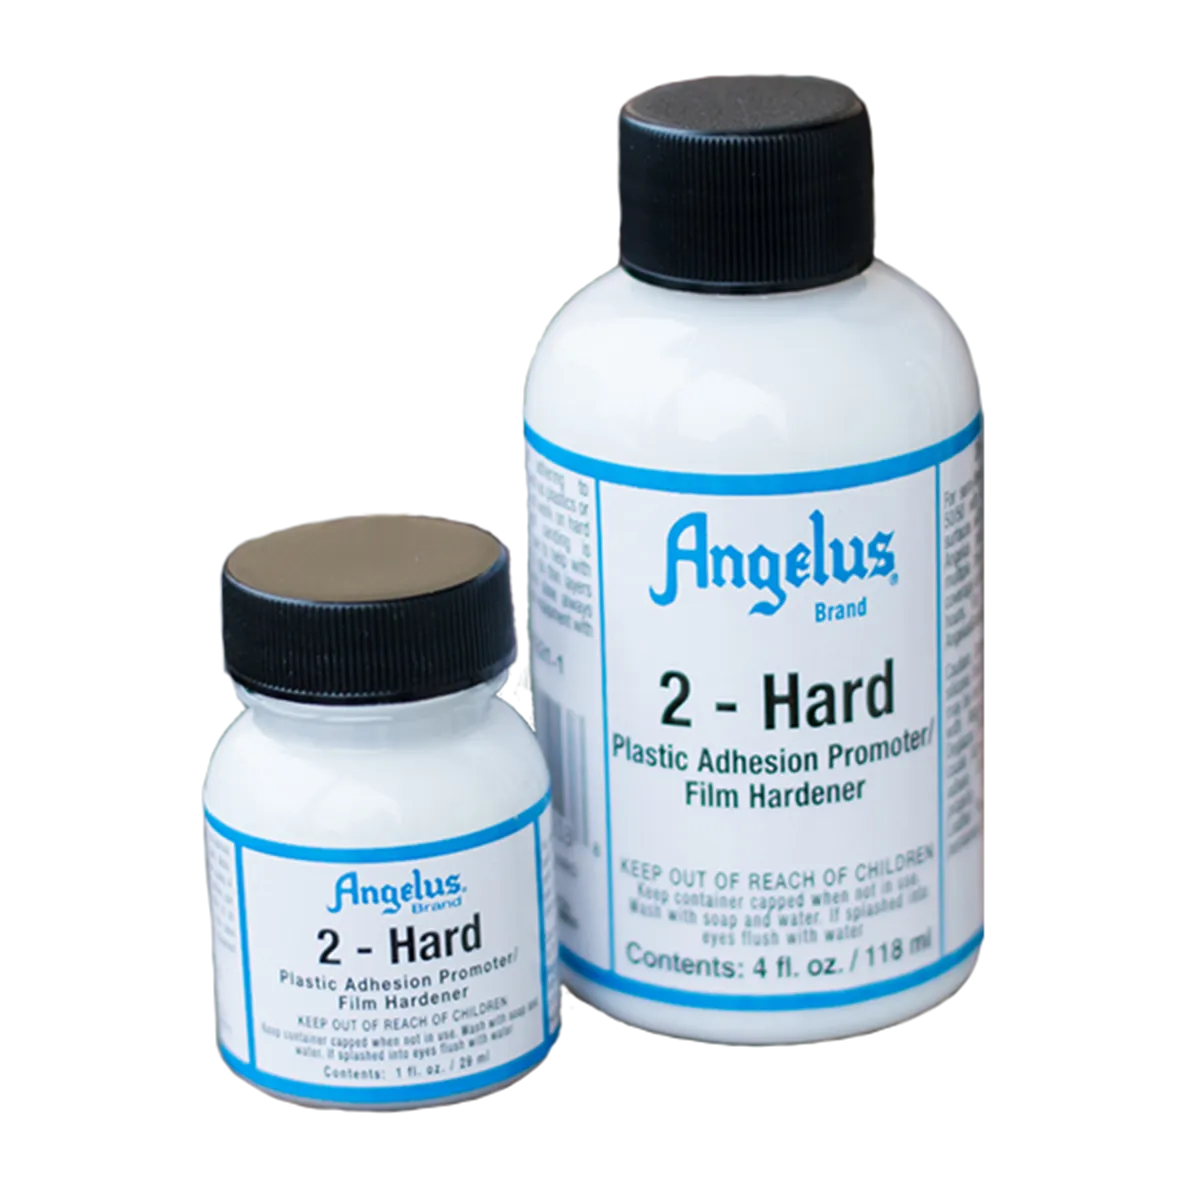 ANGELUS Acrylic Leather Paint 2-Hard Adhesion Promoter - Film Hardener / Dodatek akrylowy do malowania plastiku i innych twardych nieporowatych powierzchni